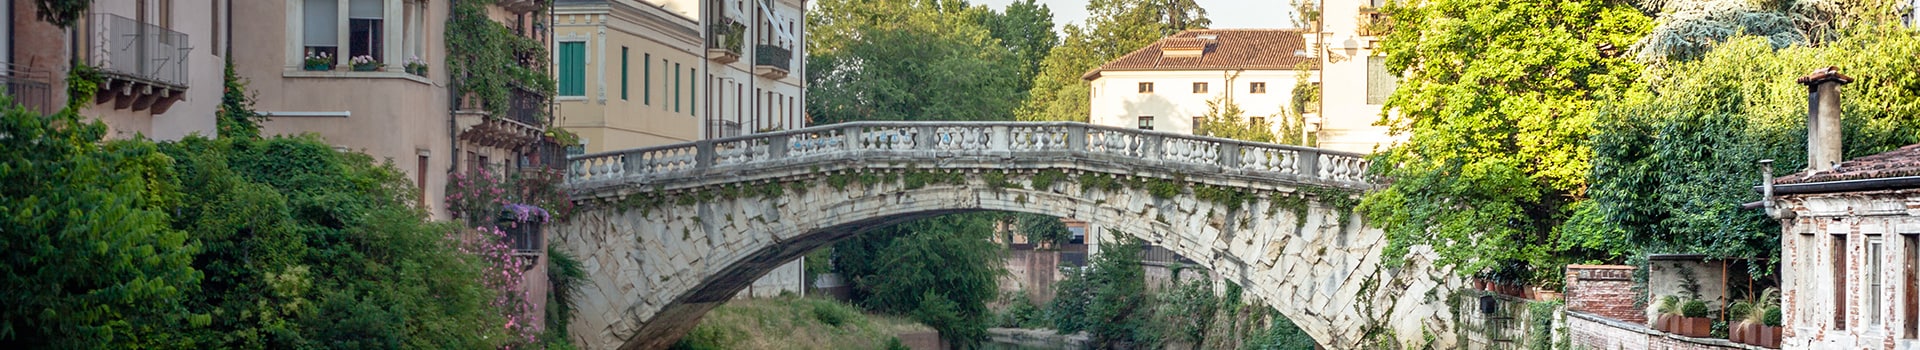 Brindisi - Vicenza